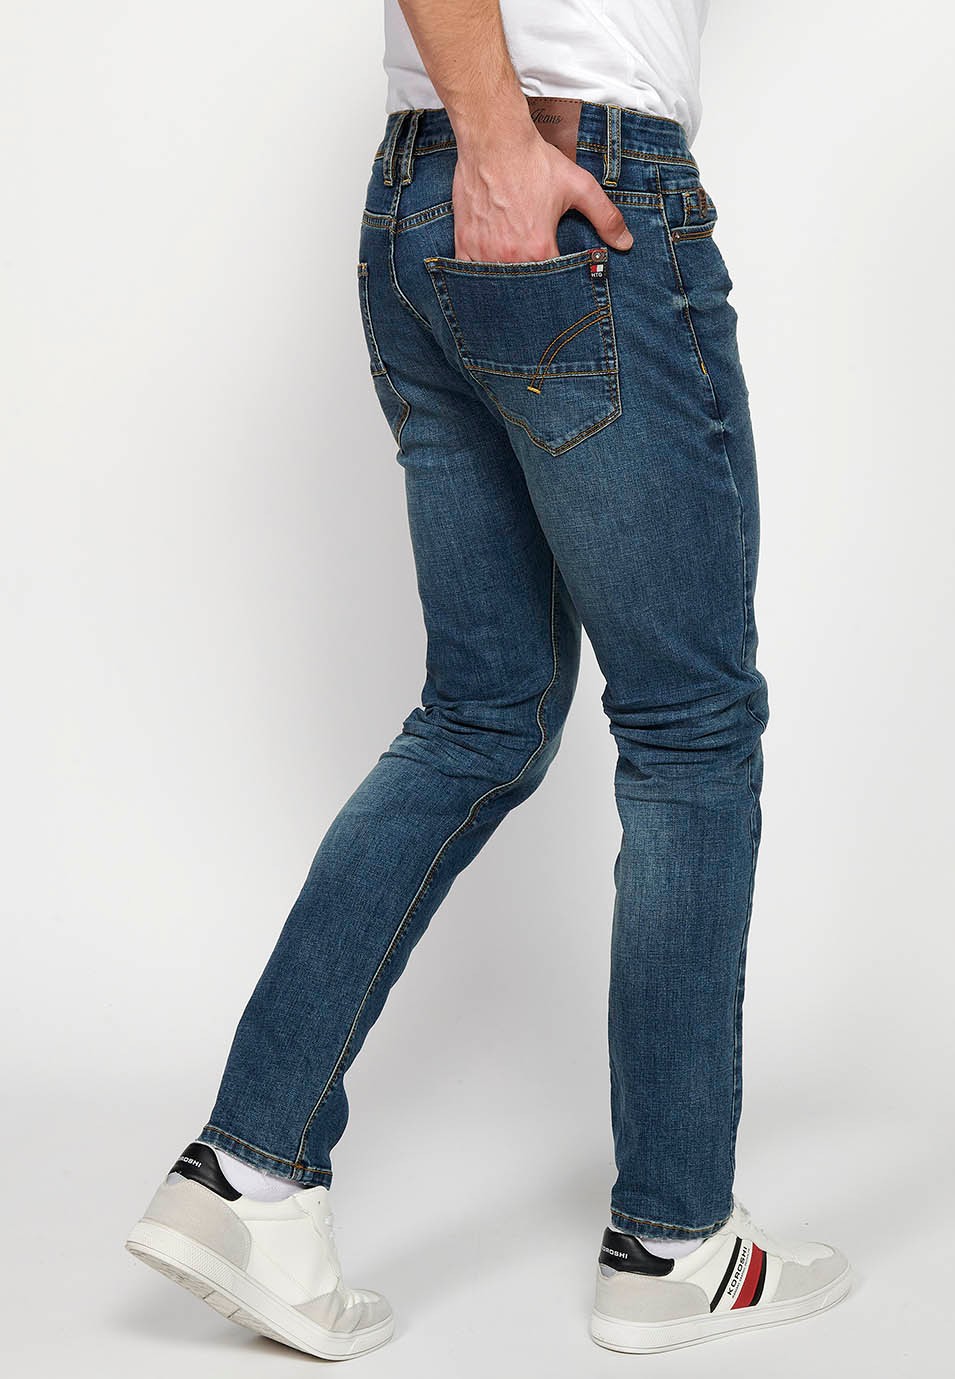 Lange, gerade Jeanshose in normaler Passform mit Reißverschluss und Knopfverschluss vorne und fünf Taschen, eine blaue Tasche für Herren 7